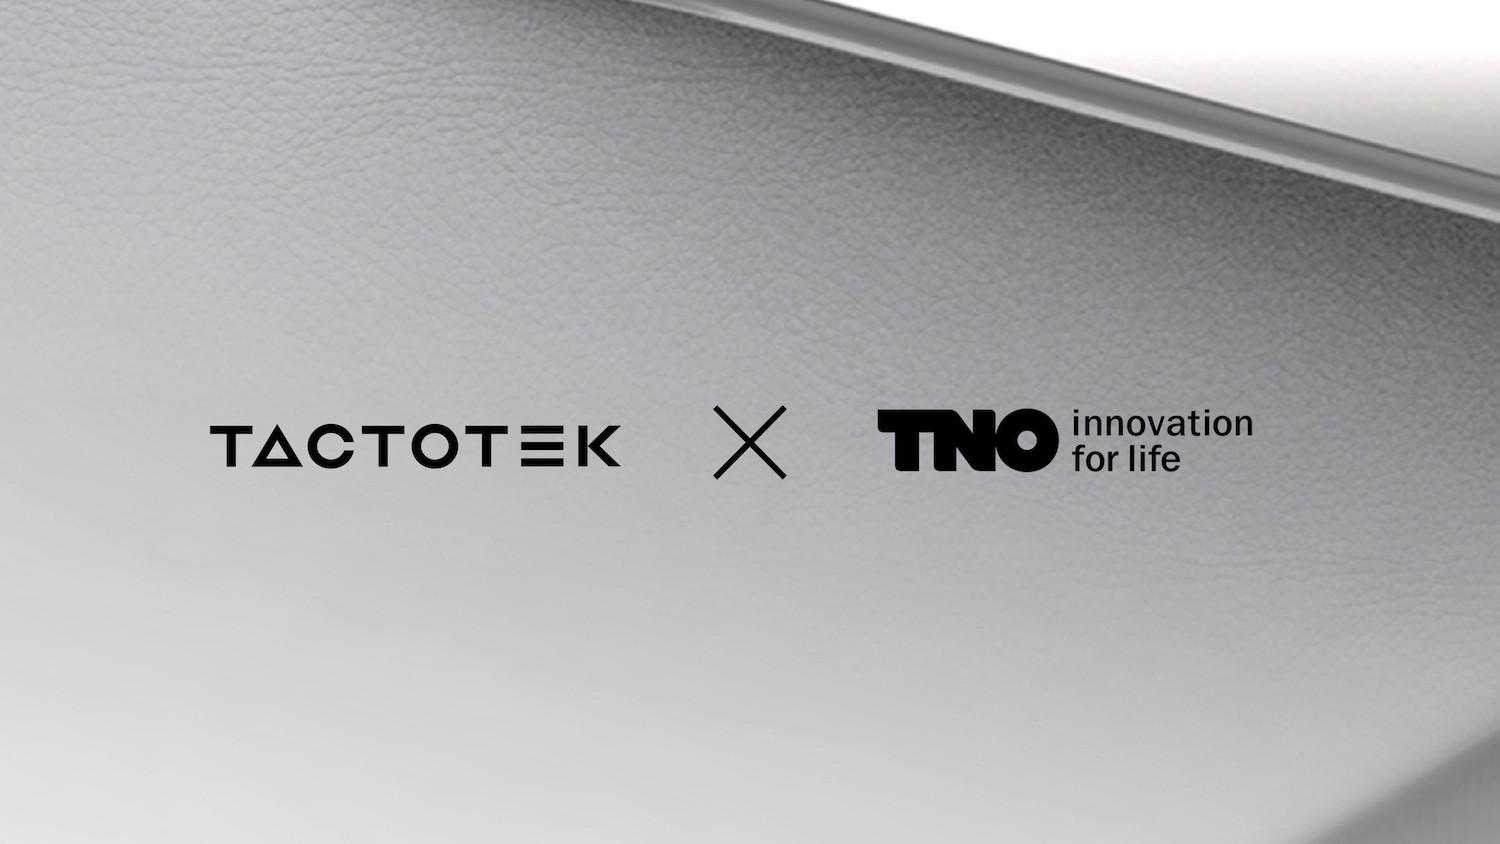 Company logos TactoTek and TNO